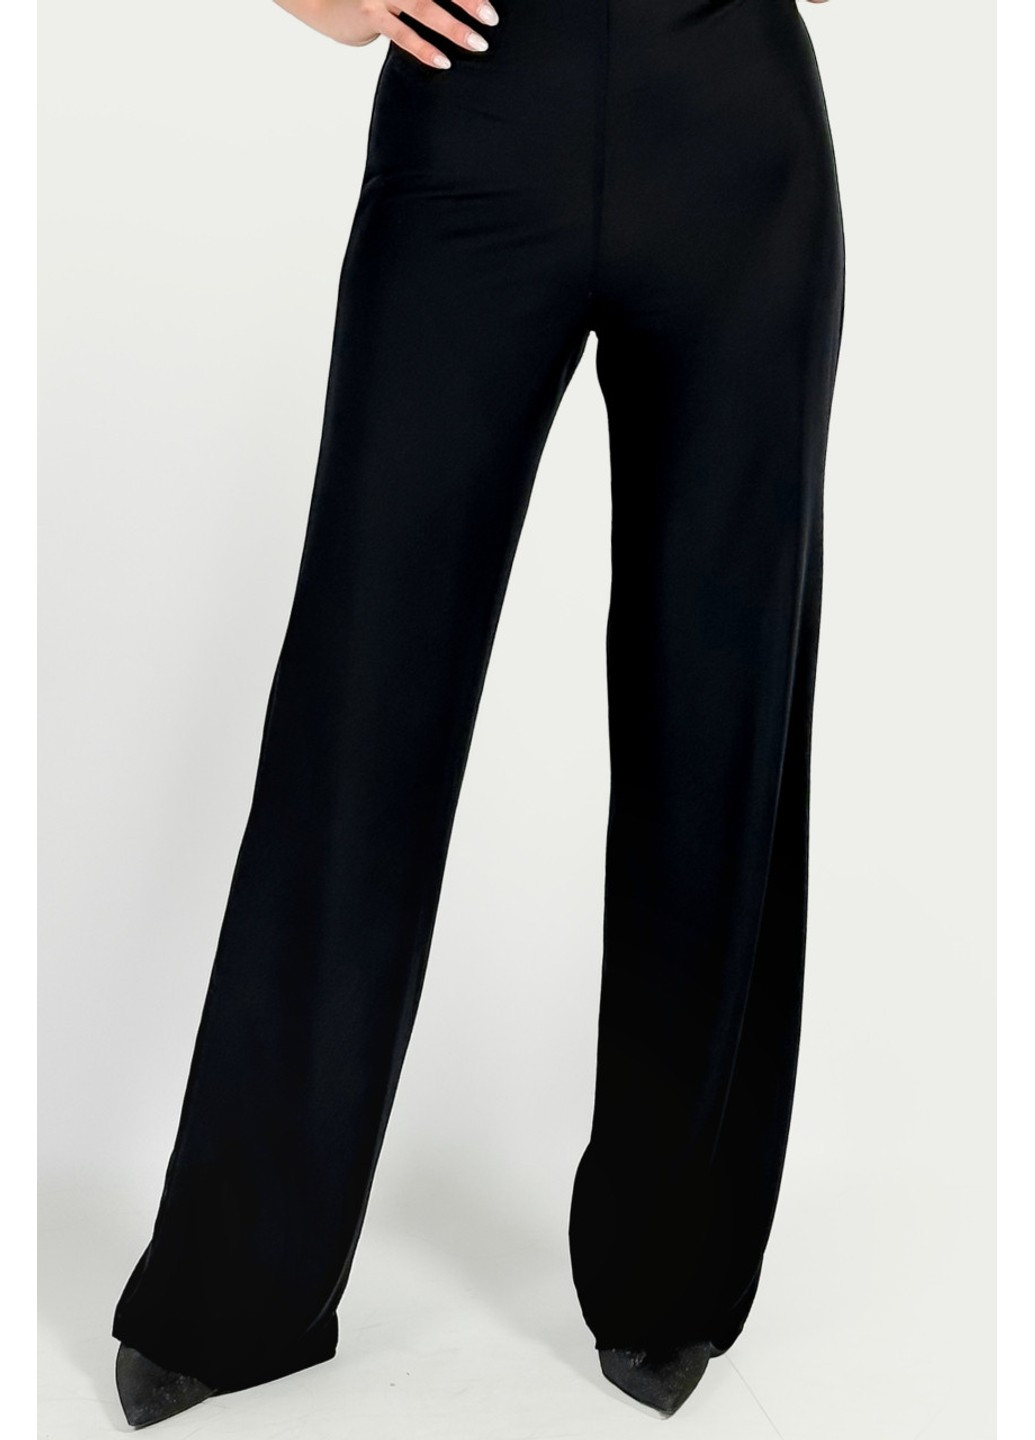 Комбінезон 2972/202/800 Zara комбінезон-брюки однотонний чорний вечірній